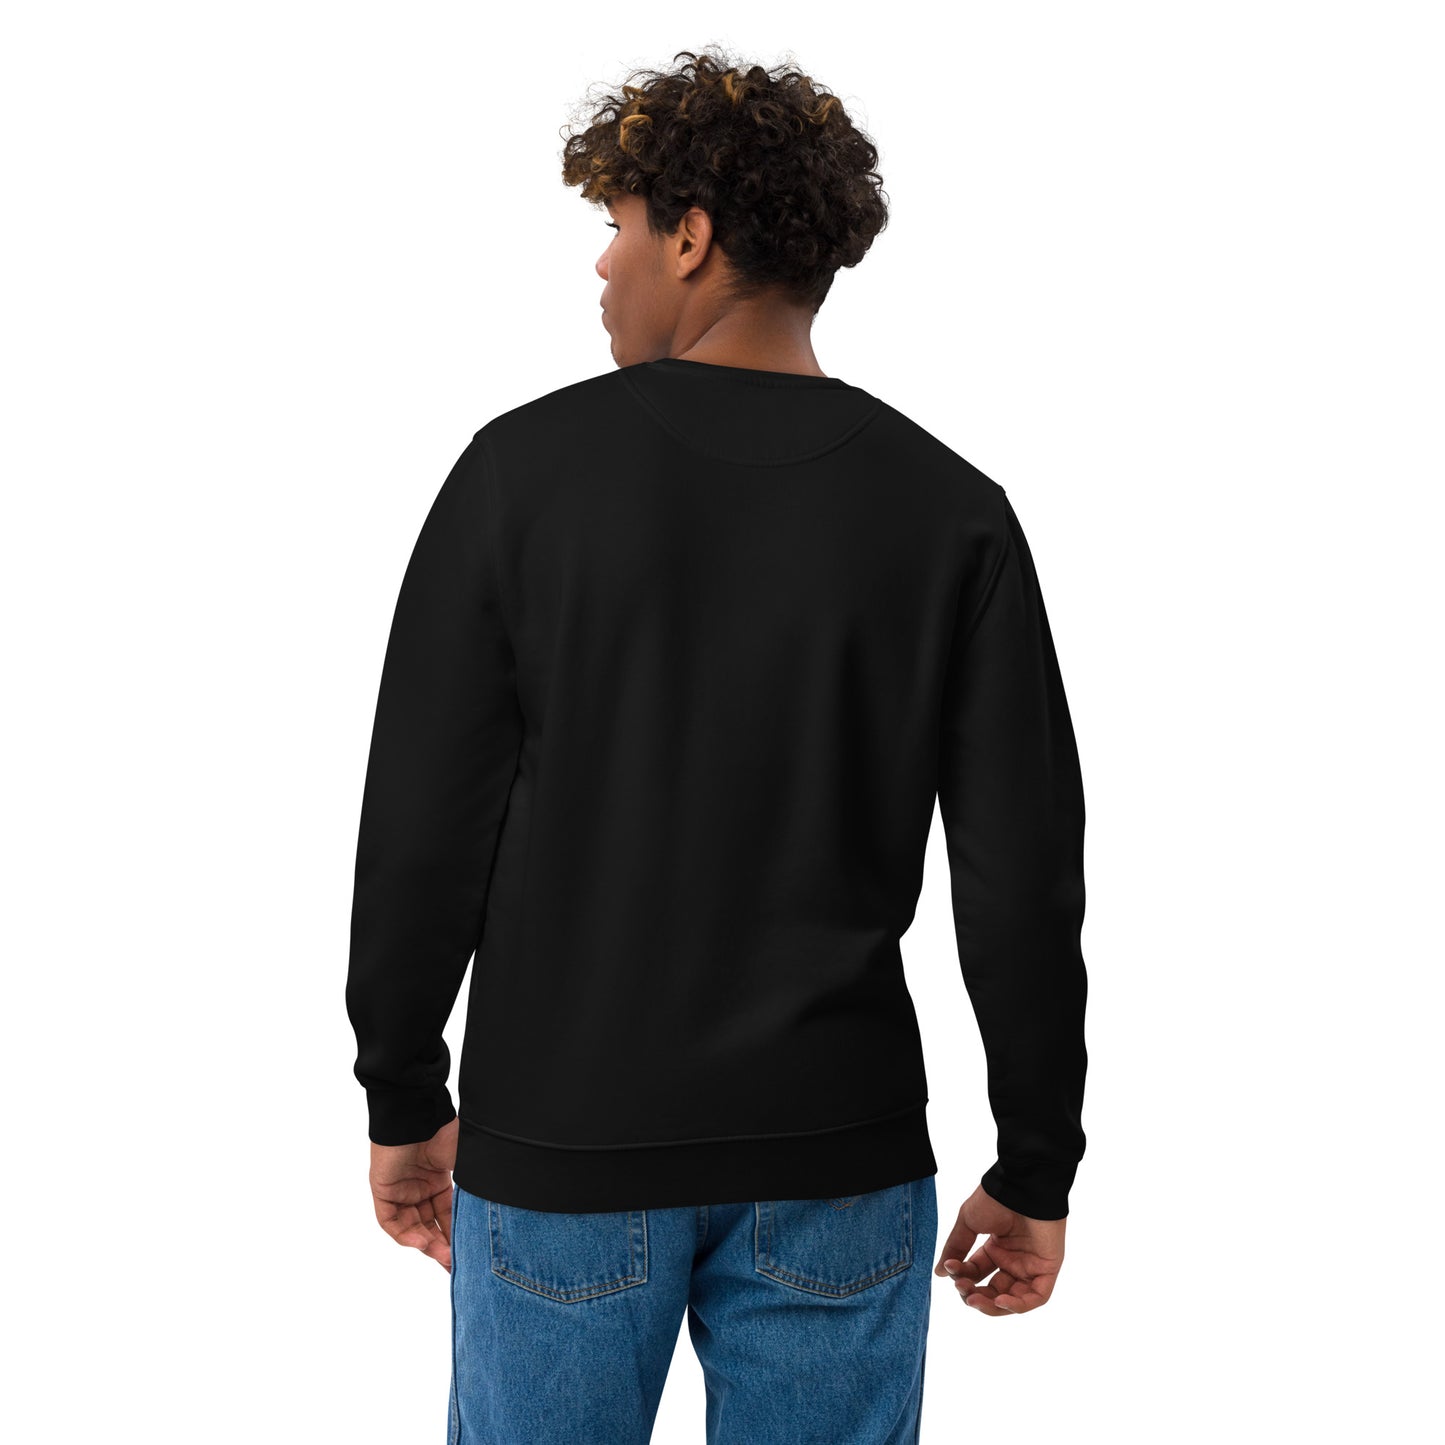 TE012.4 - Unisex Bio-Pullover - Sweater - Sweatshirt -  Social Media Trend - Ya Manyak, Ya 7Haywan 1 - white logo